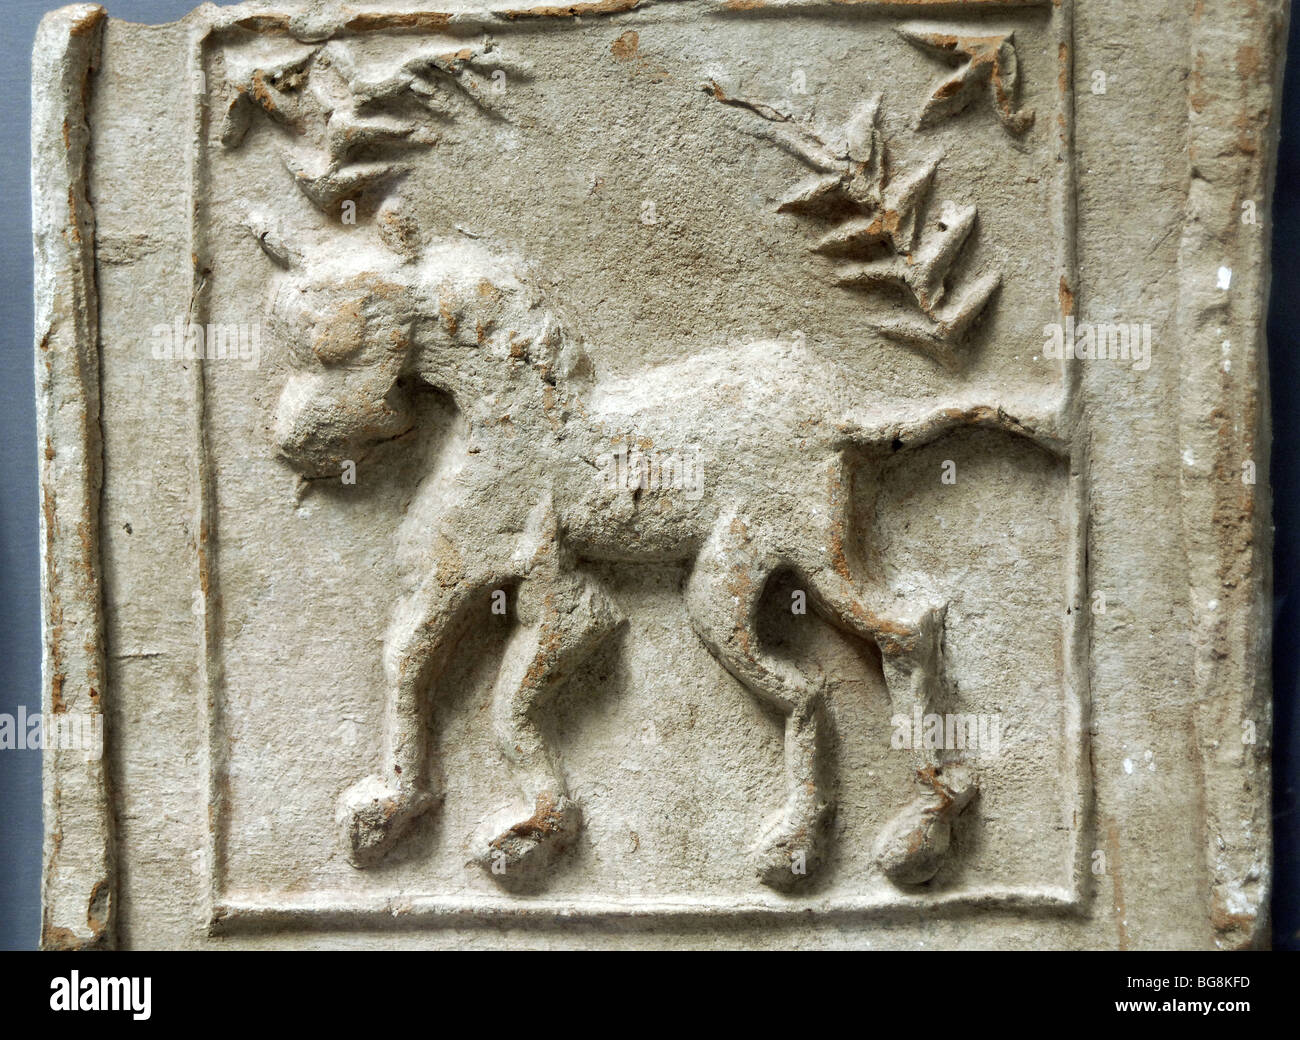 Abbildung eines Pferdes. Terrakotta. Museum der bildenden Künste. Budapest. Ungarn. Stockfoto